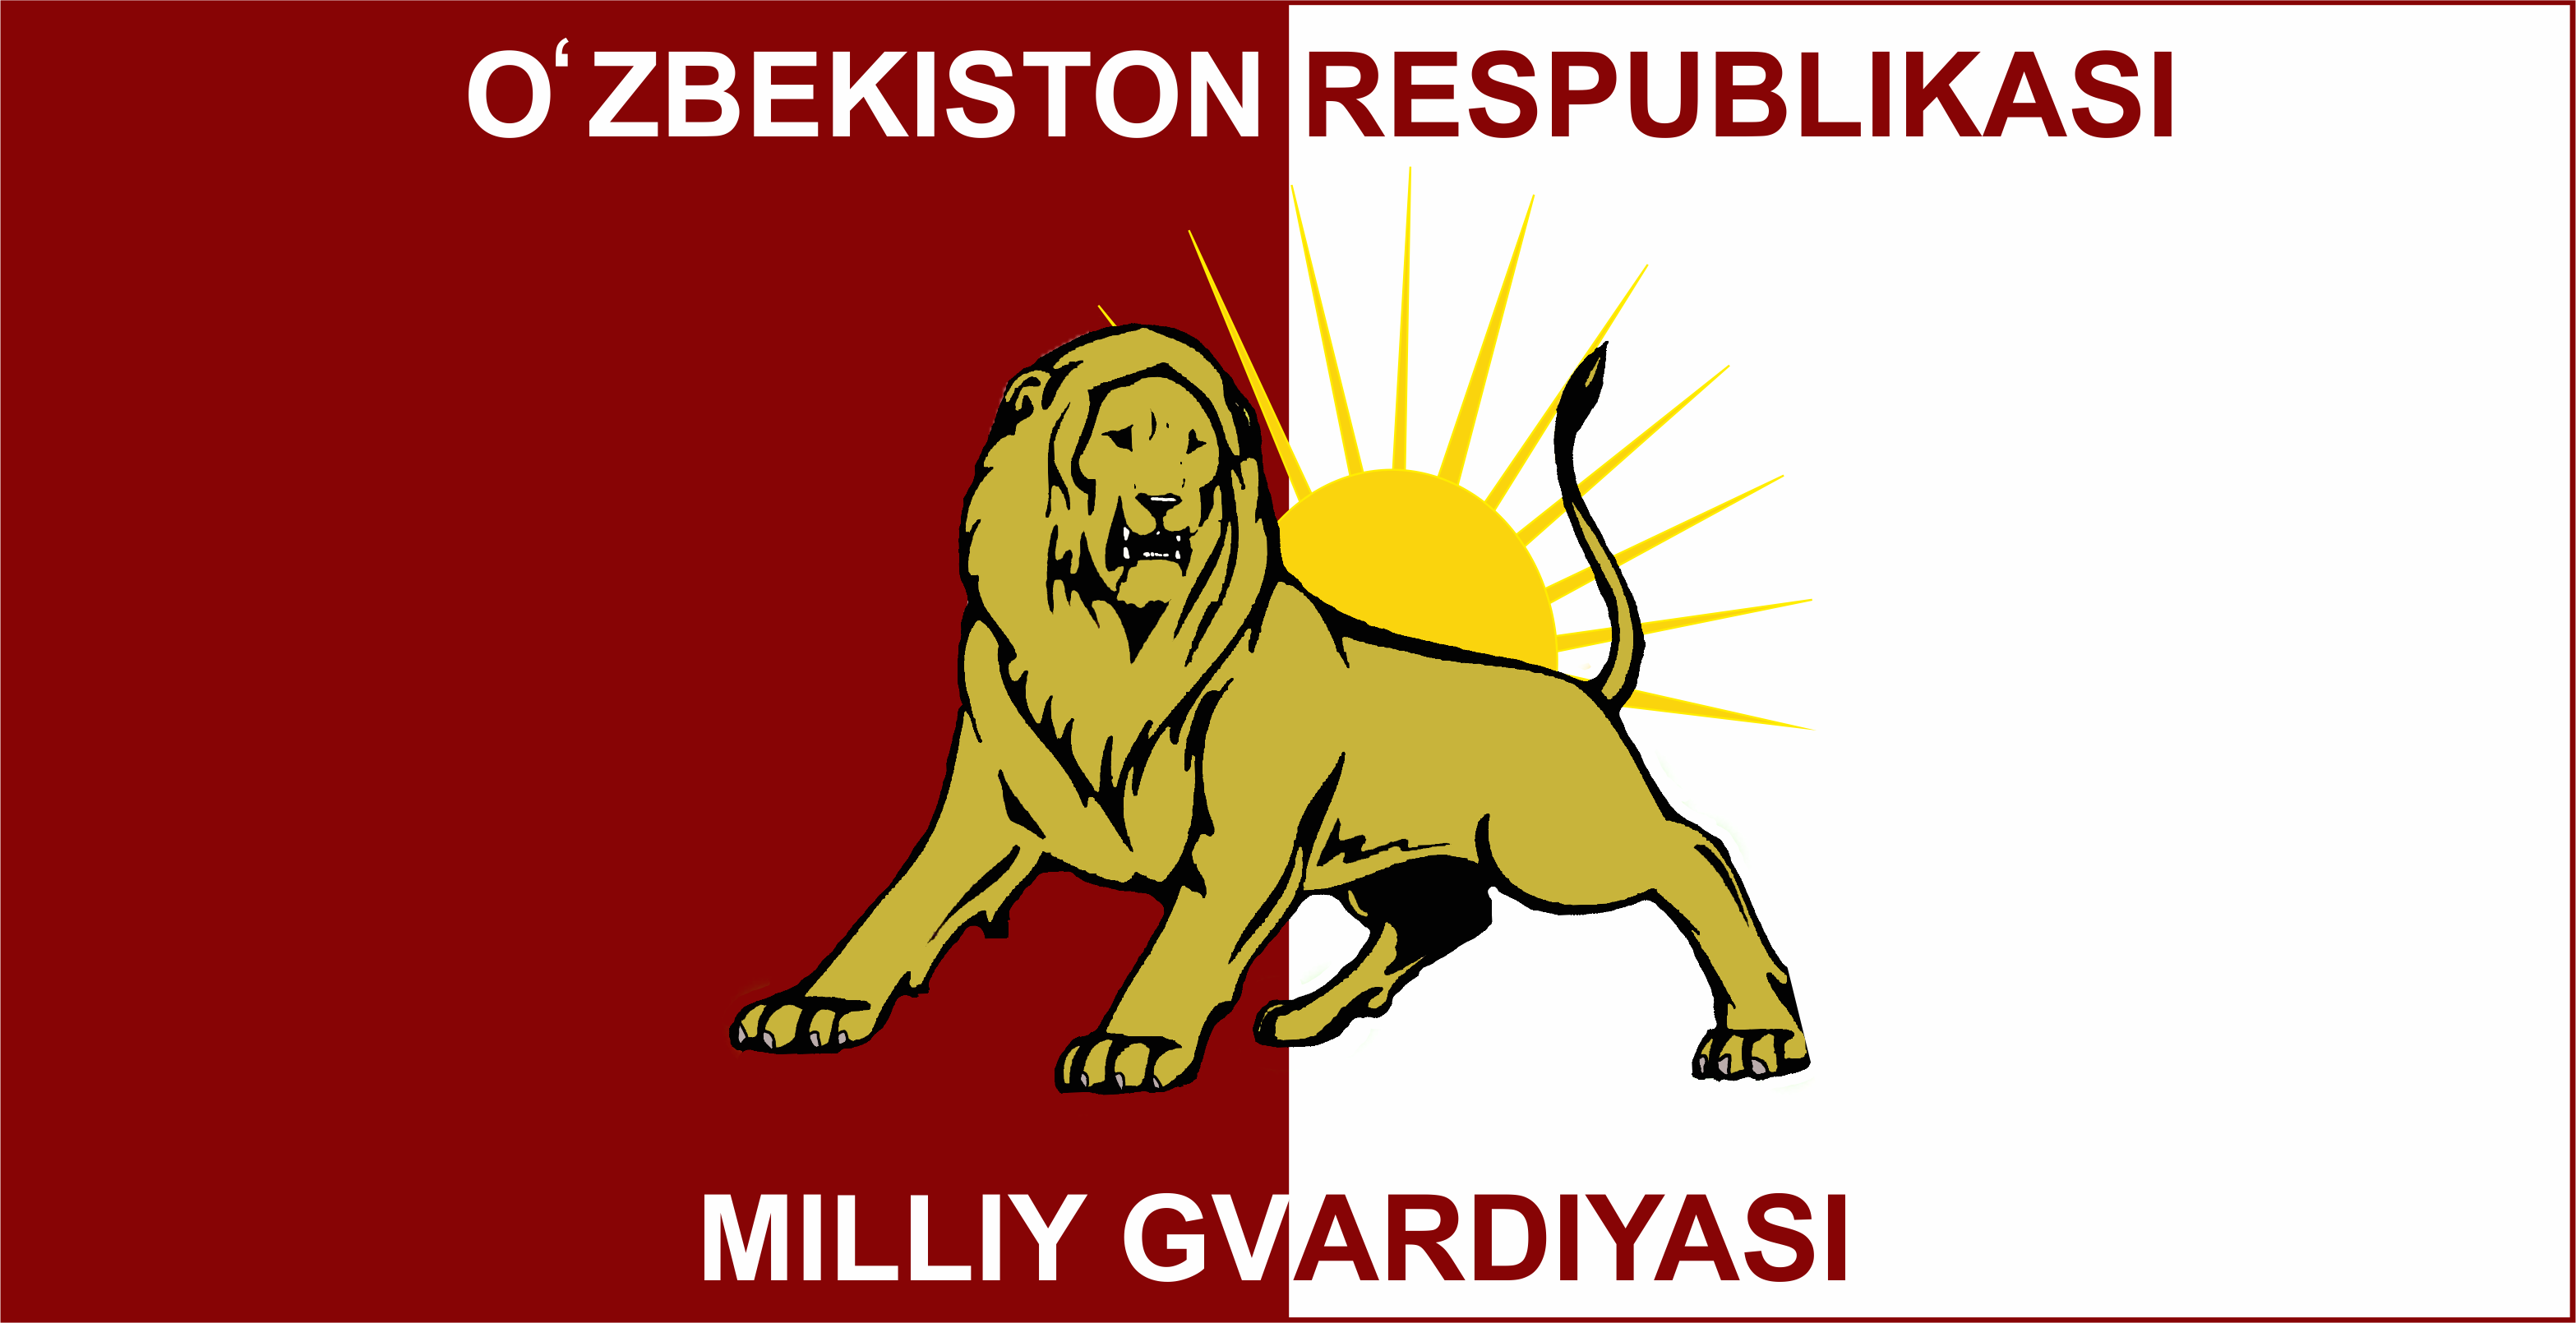 Национальная гвардия Республики Узбекистан